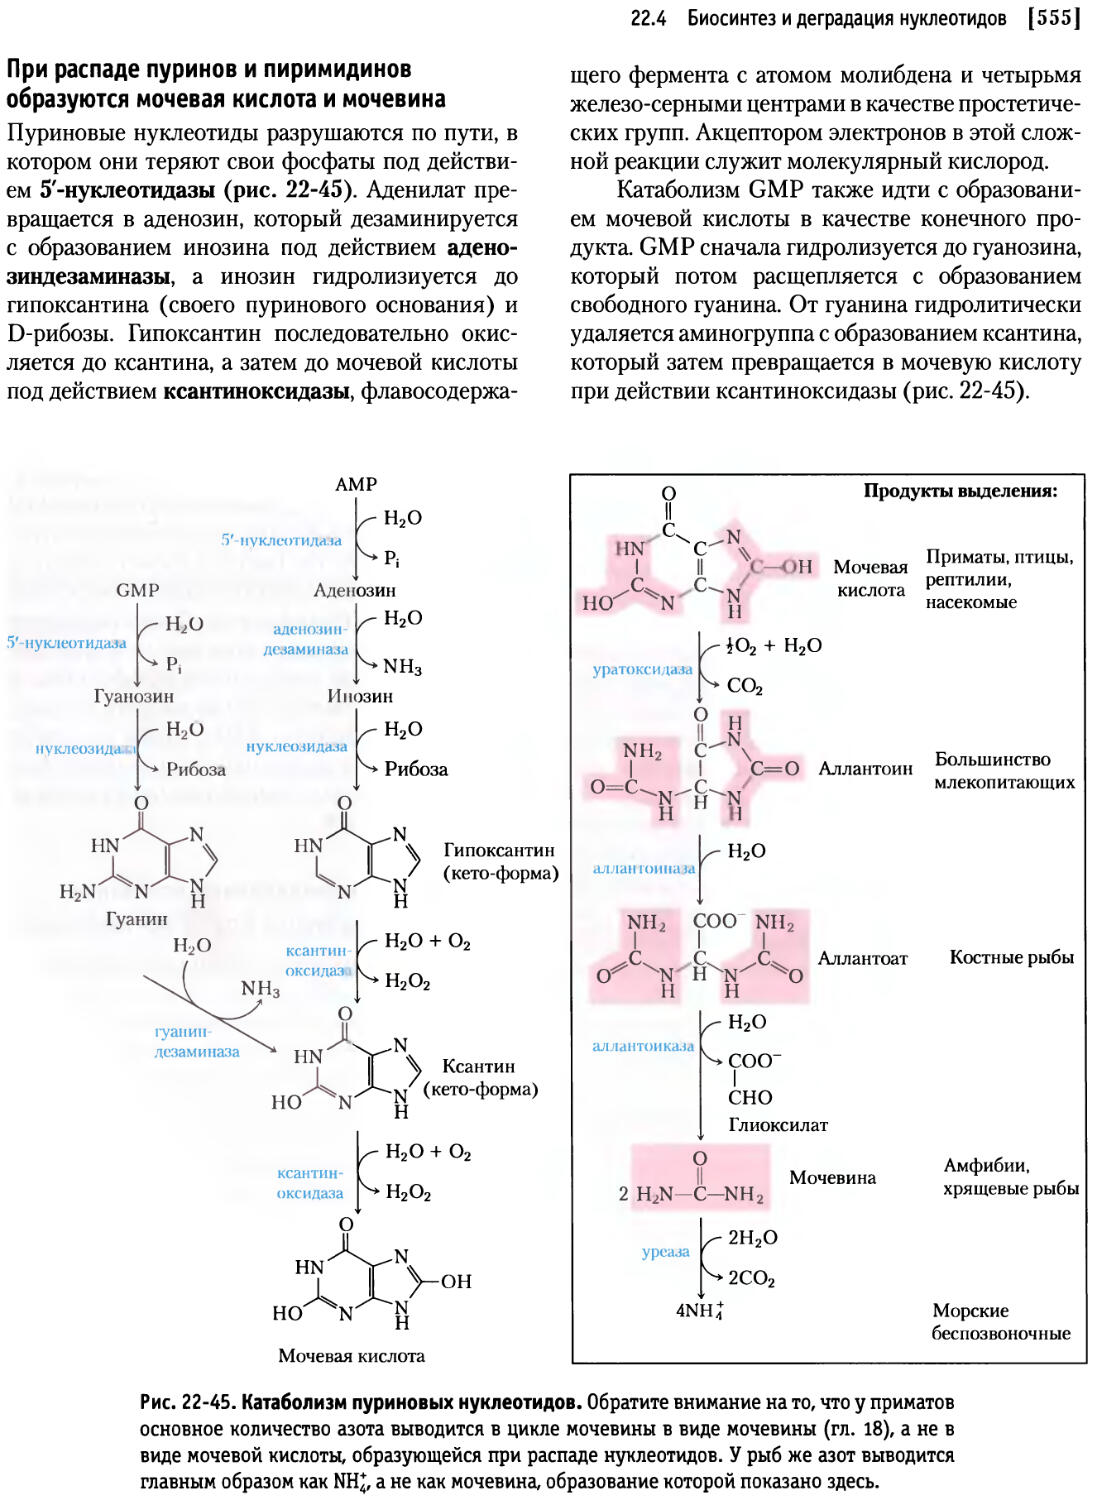 Распад кислоты. Мочевая кислота конечный продукт катаболизма пуриновых нуклеотидов. Деградация пуриновых нуклеотидов. Схема синтеза и катаболизма пуриновых нуклеотидов. Схема катаболизма пуриновых нуклеотидов.